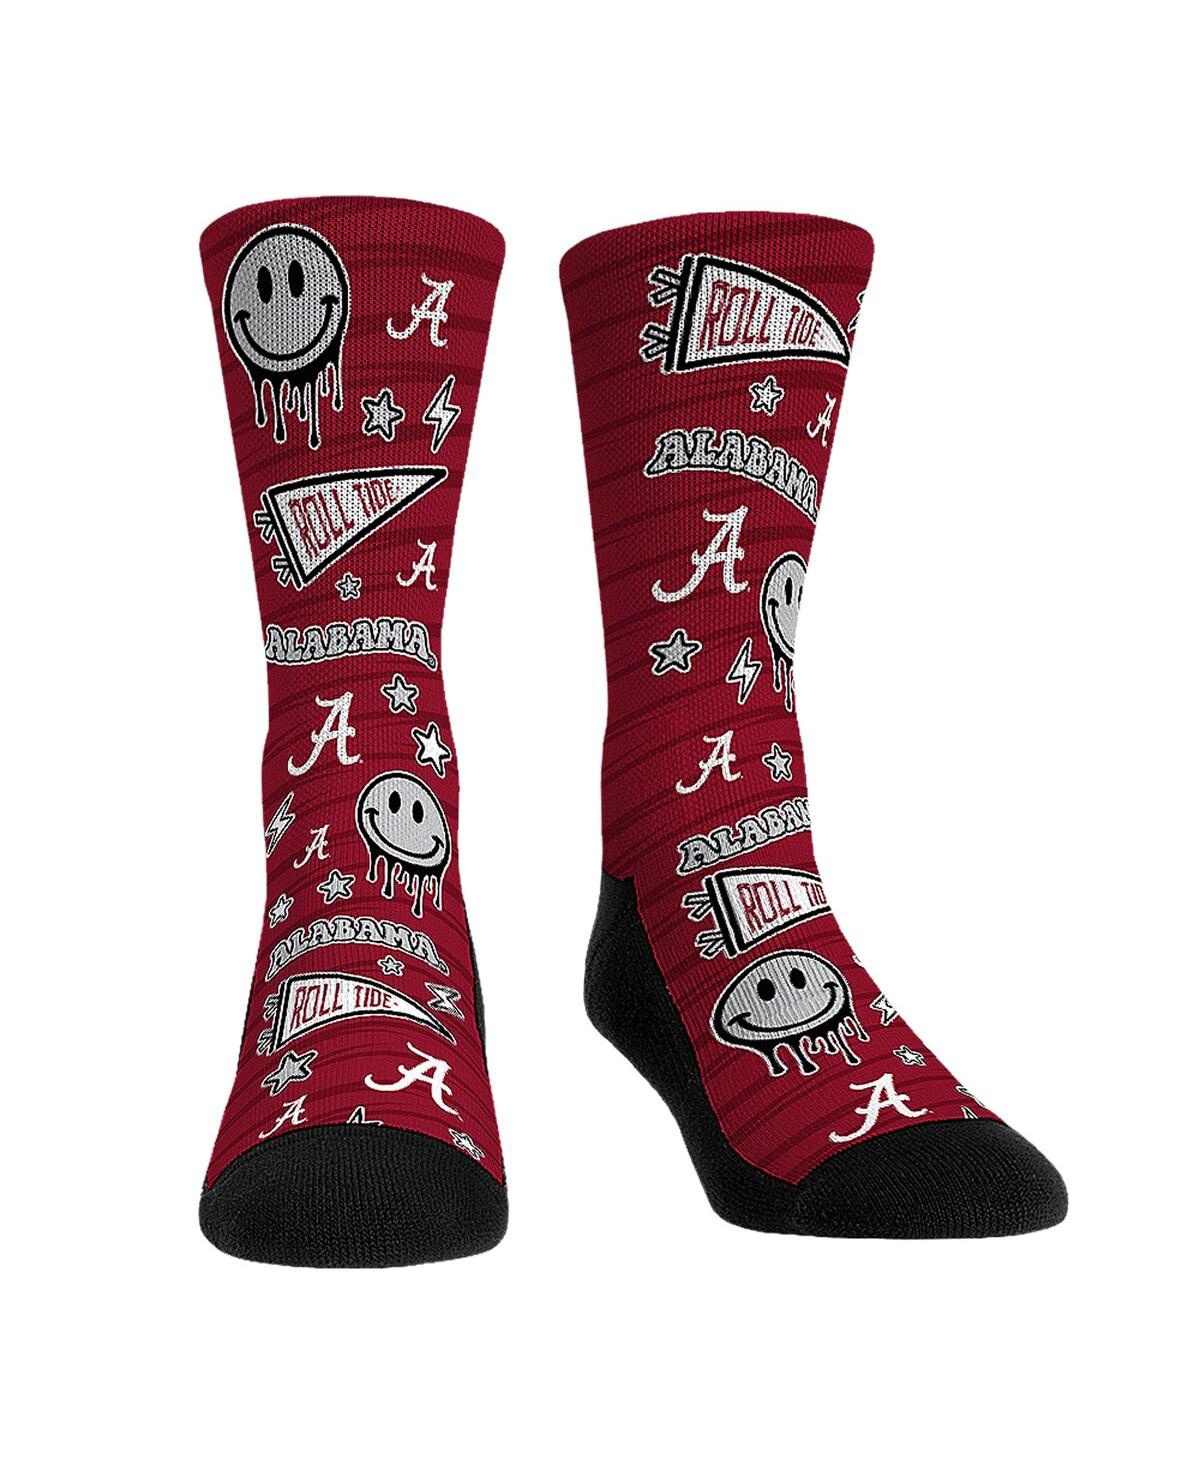 Rock 'em Men's And Women's  Socks Alabama Crimson Tide Smiley Stickers Crew Socks In Multi